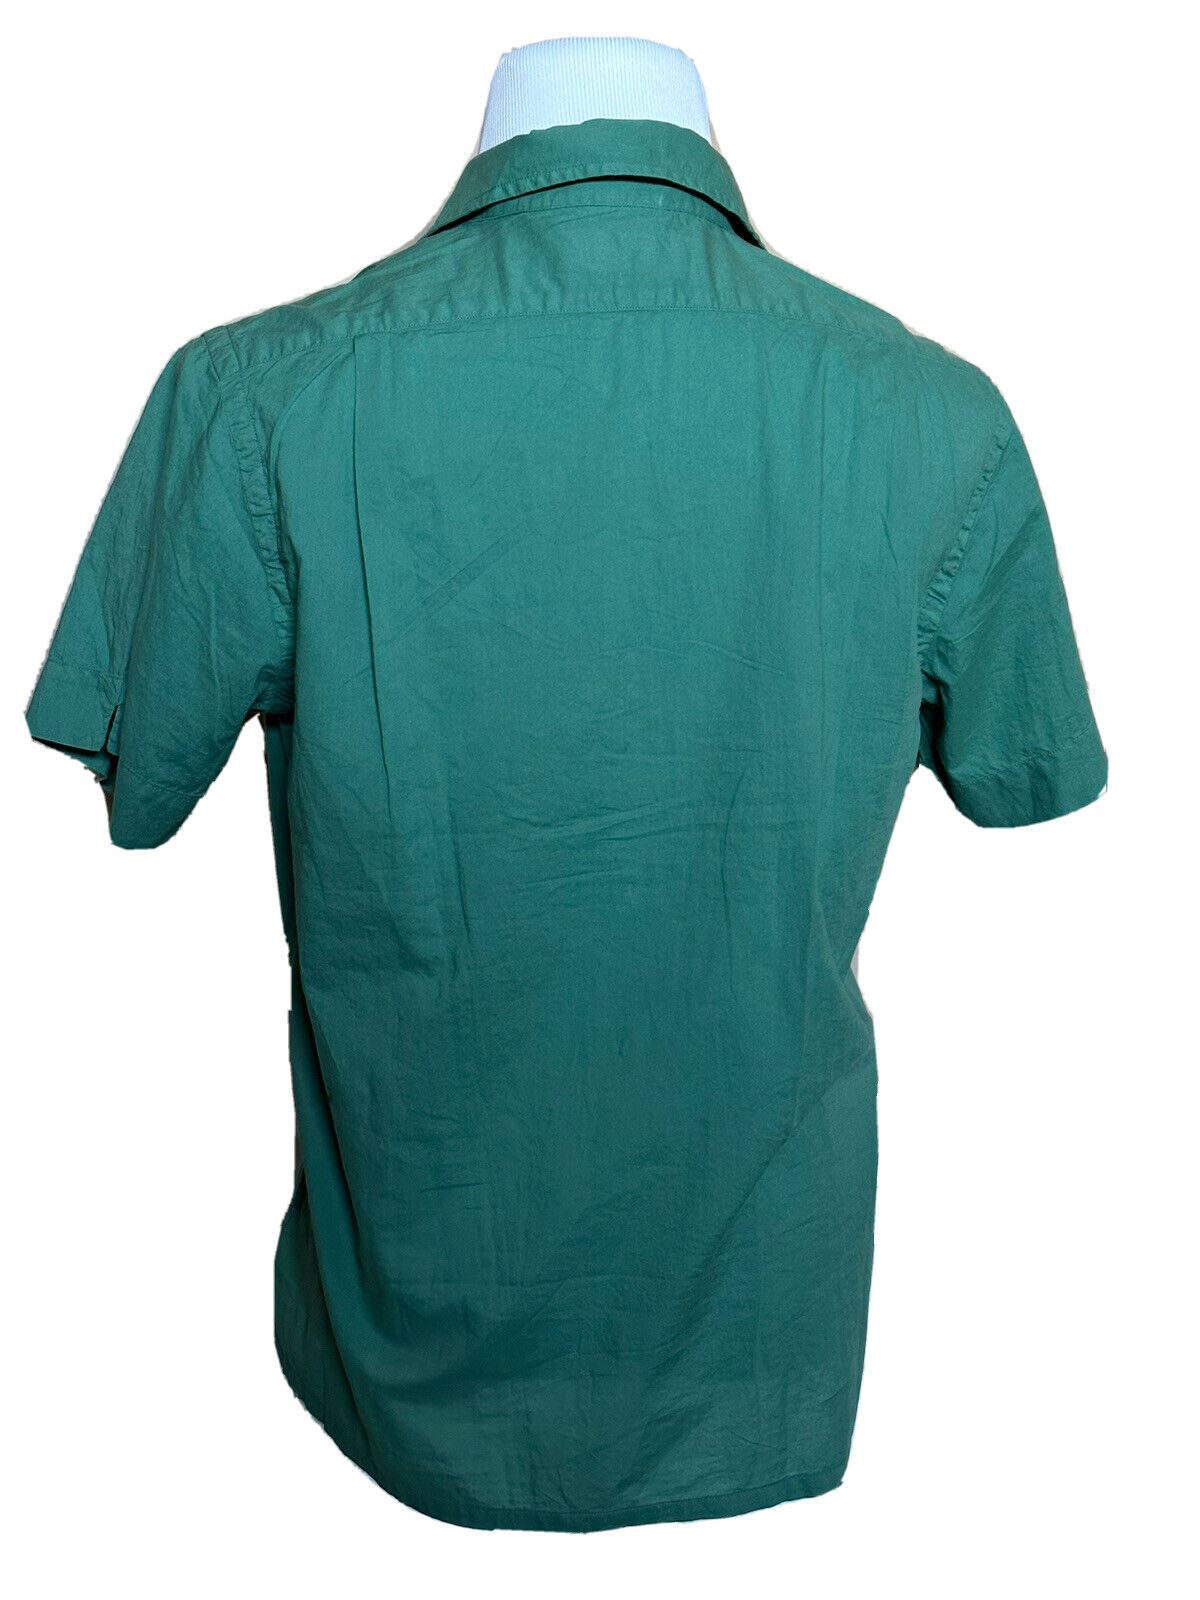 Neu mit Etikett: Polo Ralph Lauren Herren-Hemd, grün, kurzärmelig, Größe M, hergestellt in Indien